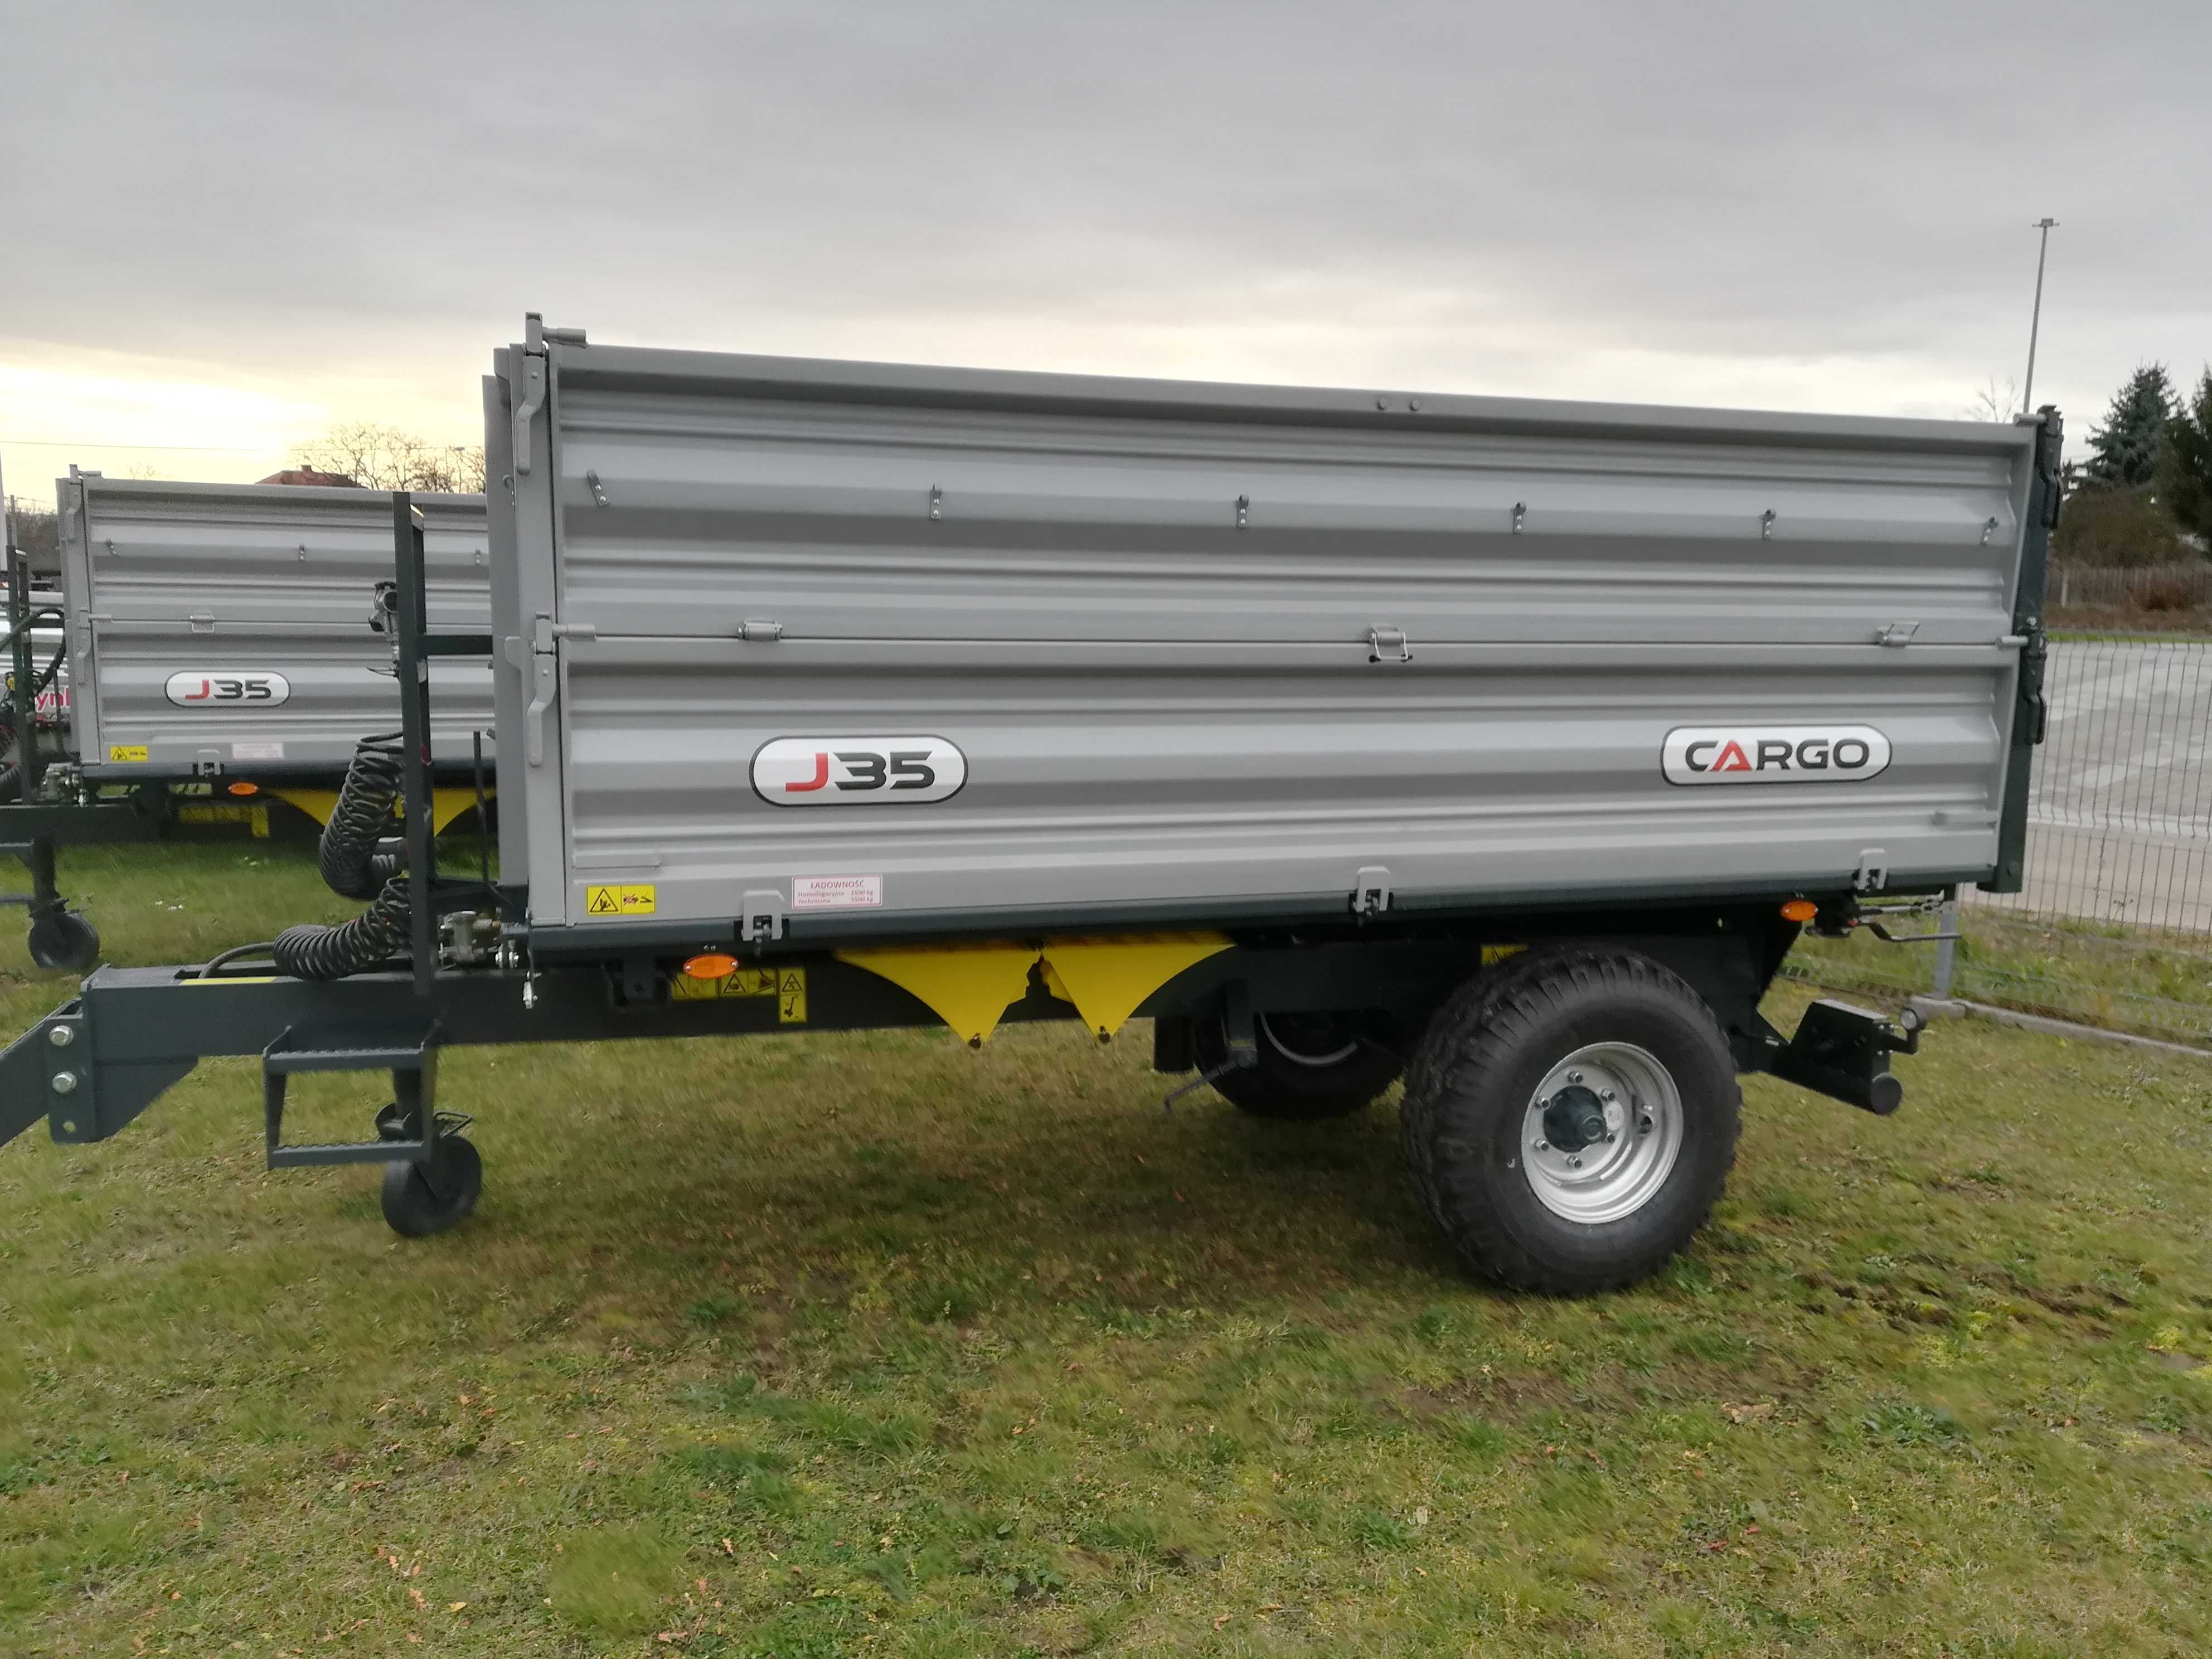 Przyczepa rolnicza jednoosiowa CARGO J50(5 ton) (nie Pronar,Metal-fach